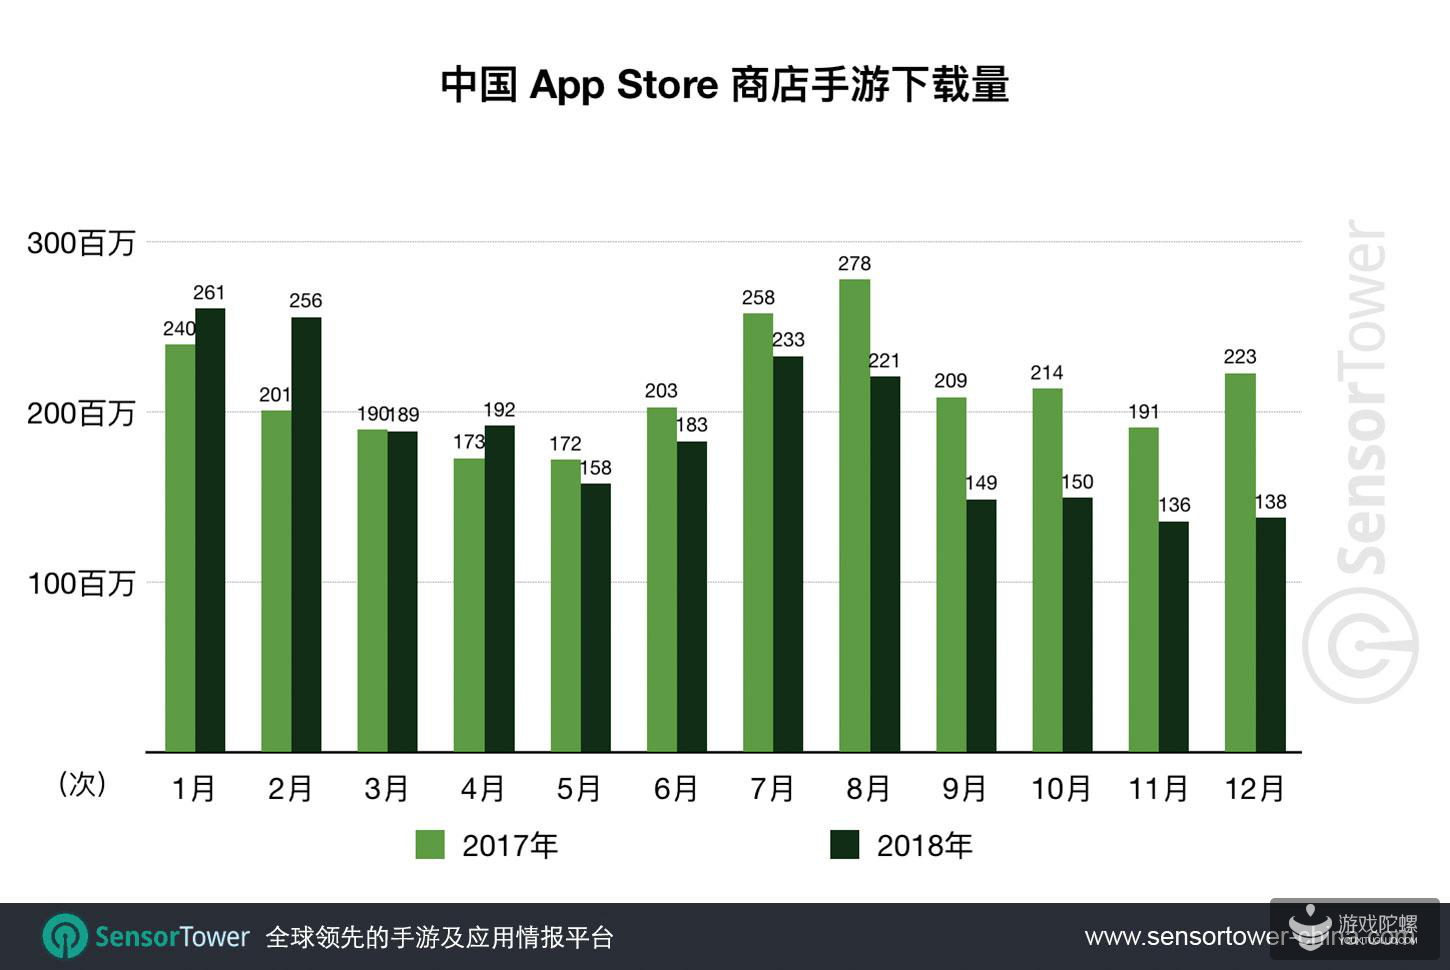 2018年中国App Store上线新游13077款，较2017年减少59%